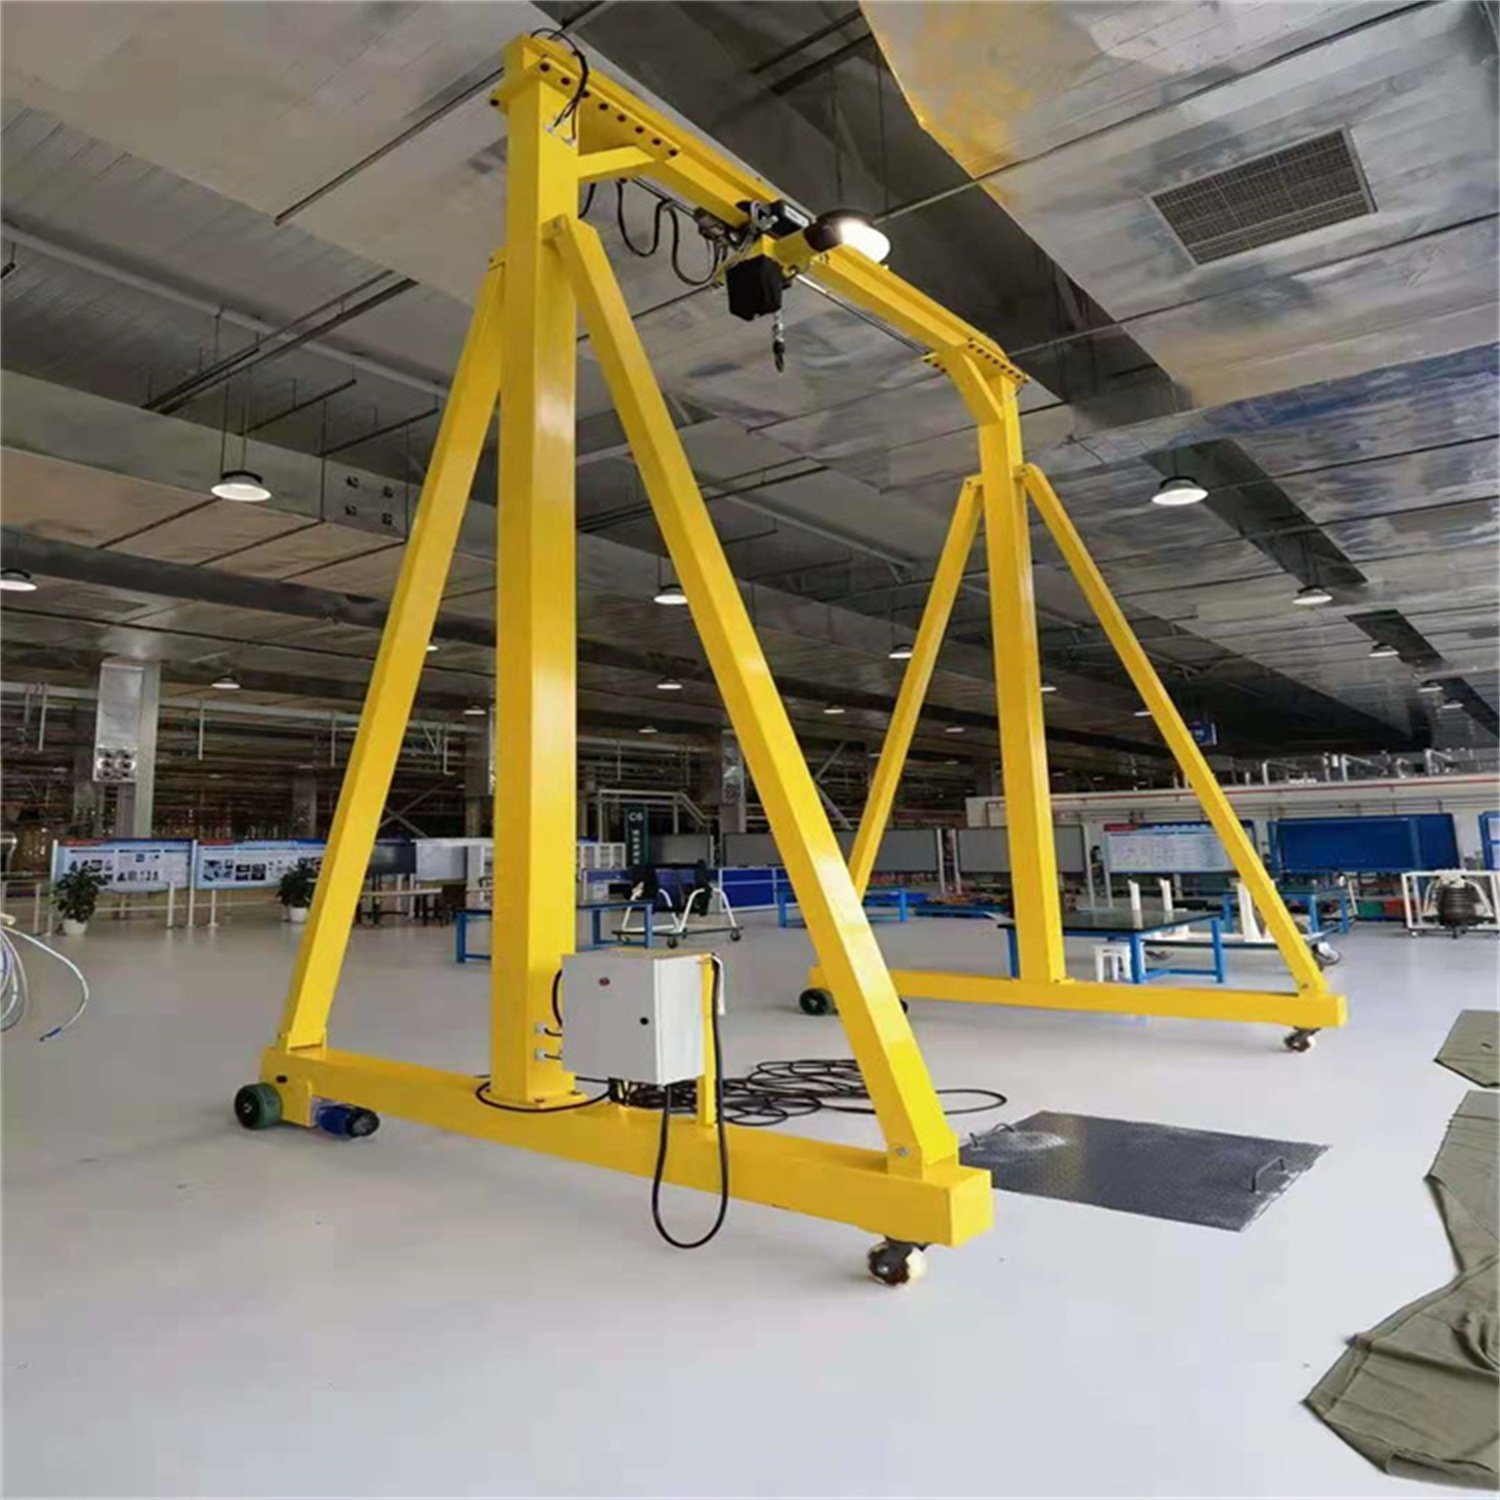 
                Individuelle Einstellbare Höhe Mini Typ 1 3 5 Ton Tragbar Mobile Werkstatt Bau Indoor Gantry Kran
            